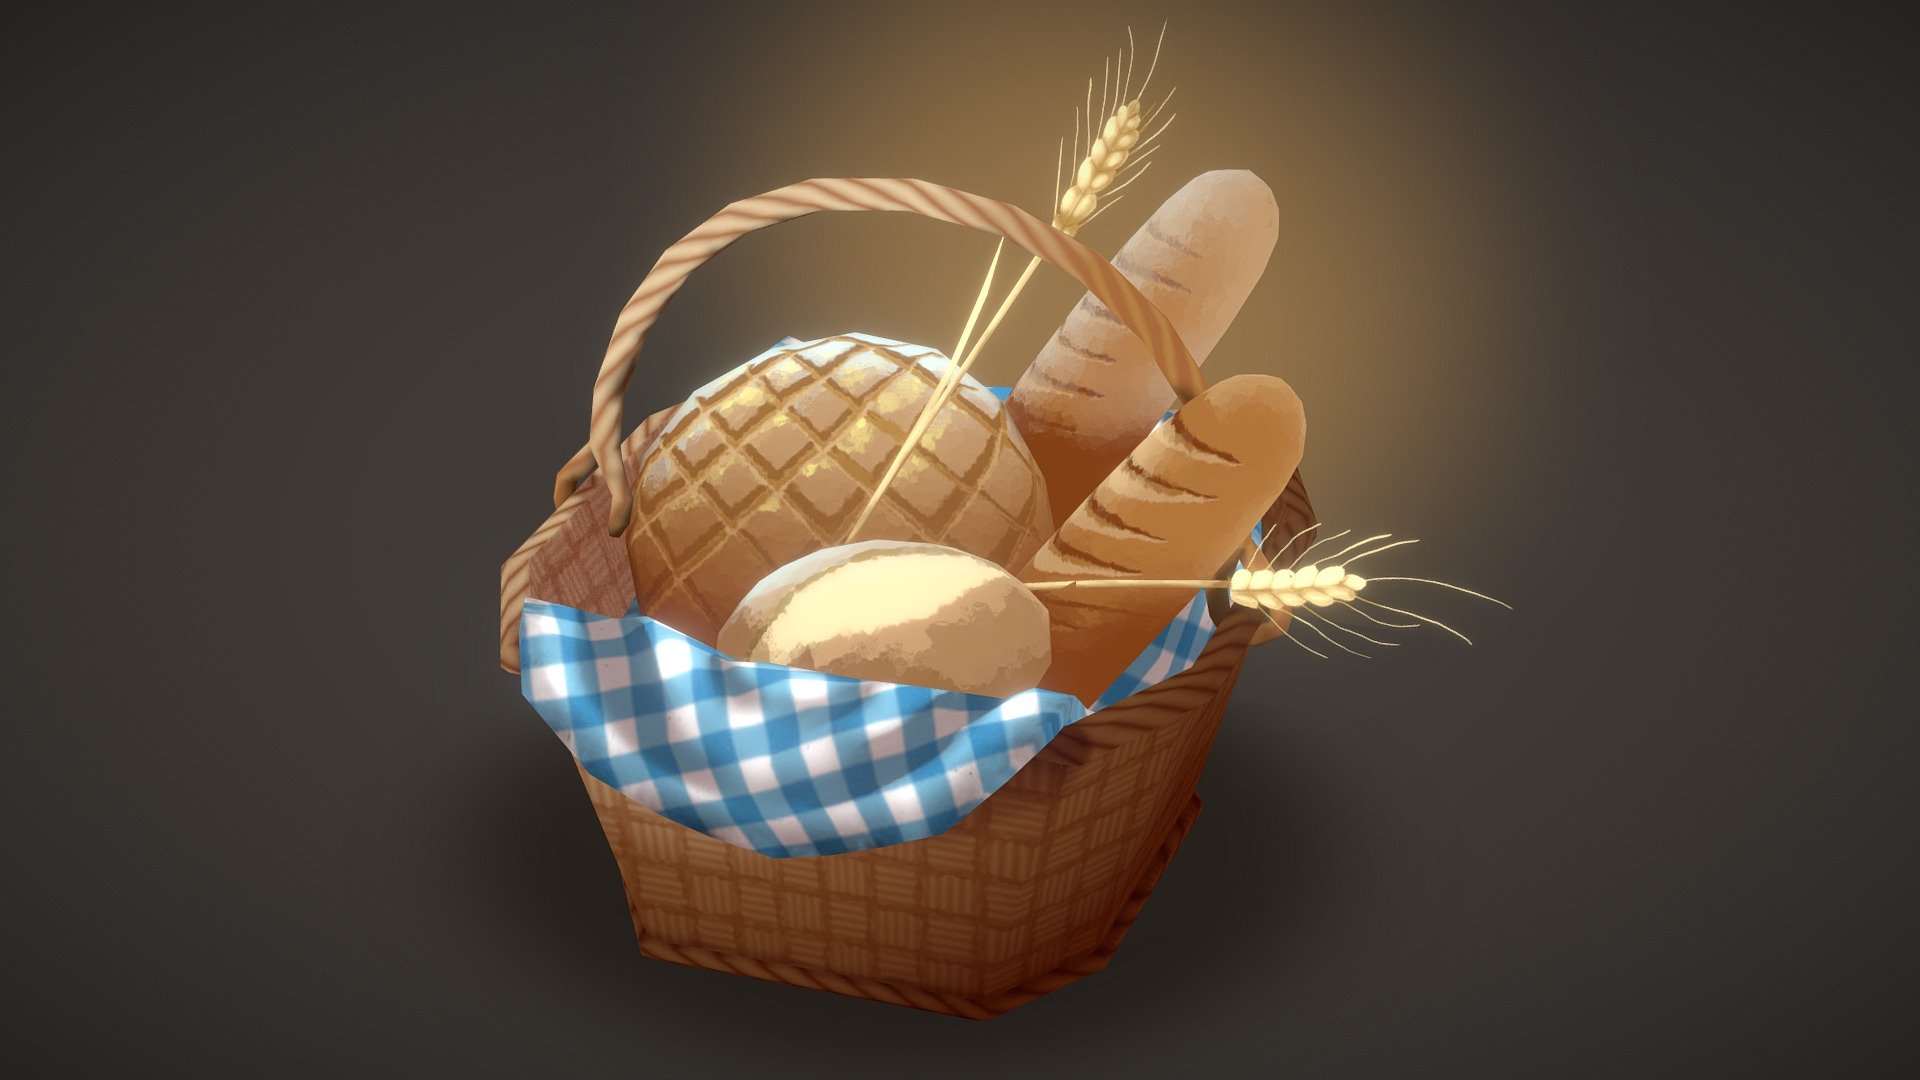 Basket of bread made for #SketchfabWeeklyChallenge
Made with Blender and Substance Painter.


Artstation: https://www.artstation.com/madameetrange
Twitter: https://twitter.com/Madame_Etrange - Bread- SketchfabWeeklyChallenge - 3D model by madameetrange 3d model